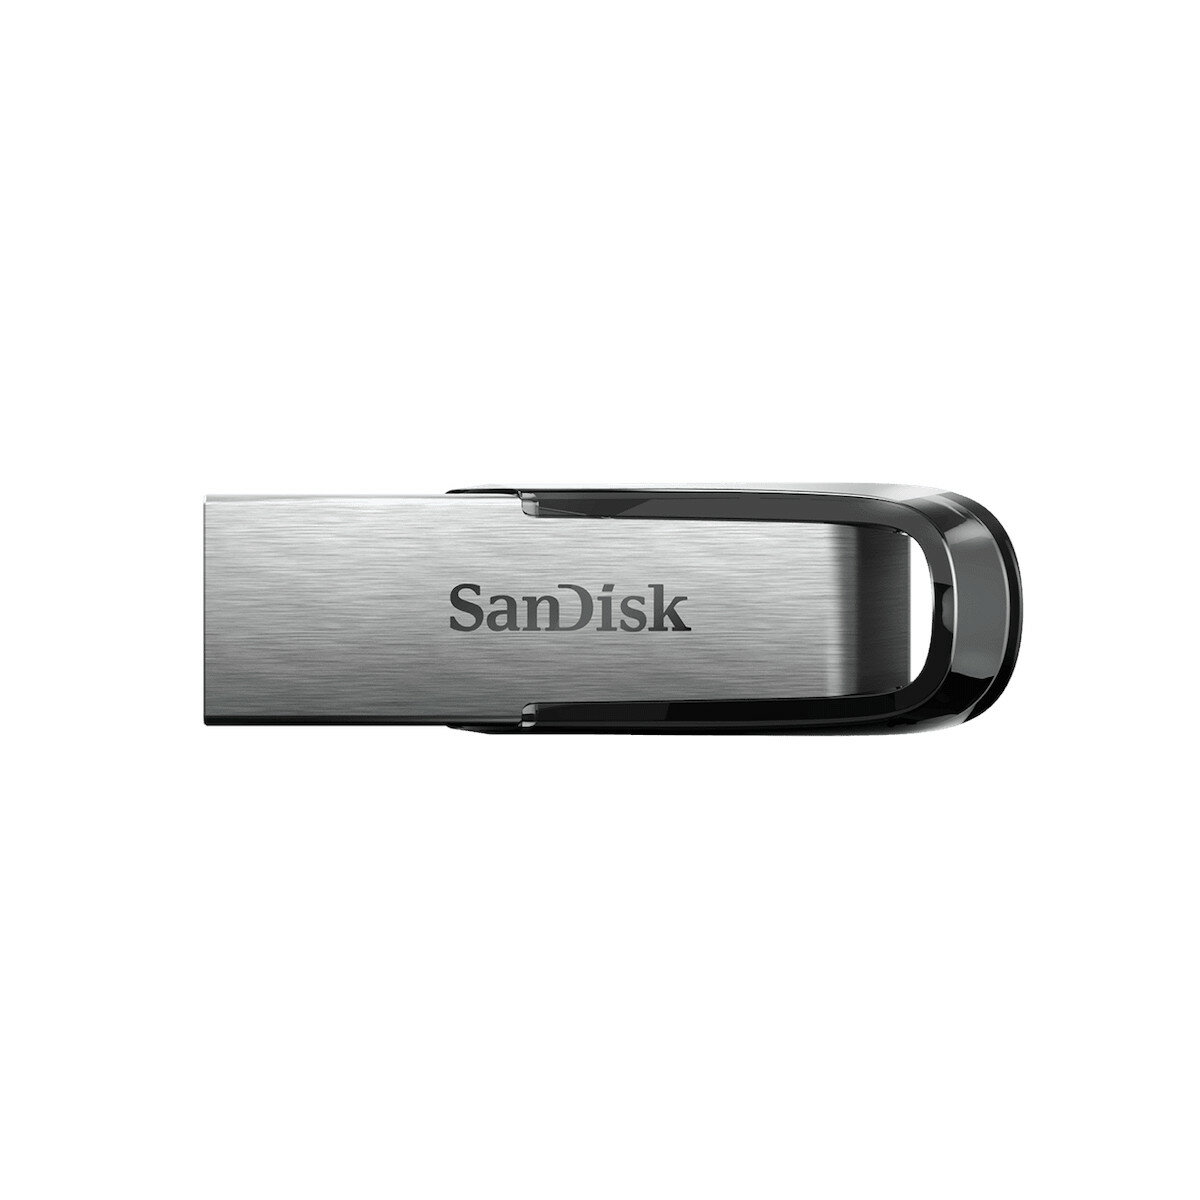 Pendrive SanDisk Ultra Flair 256 GB widoczny z góry w poziomie